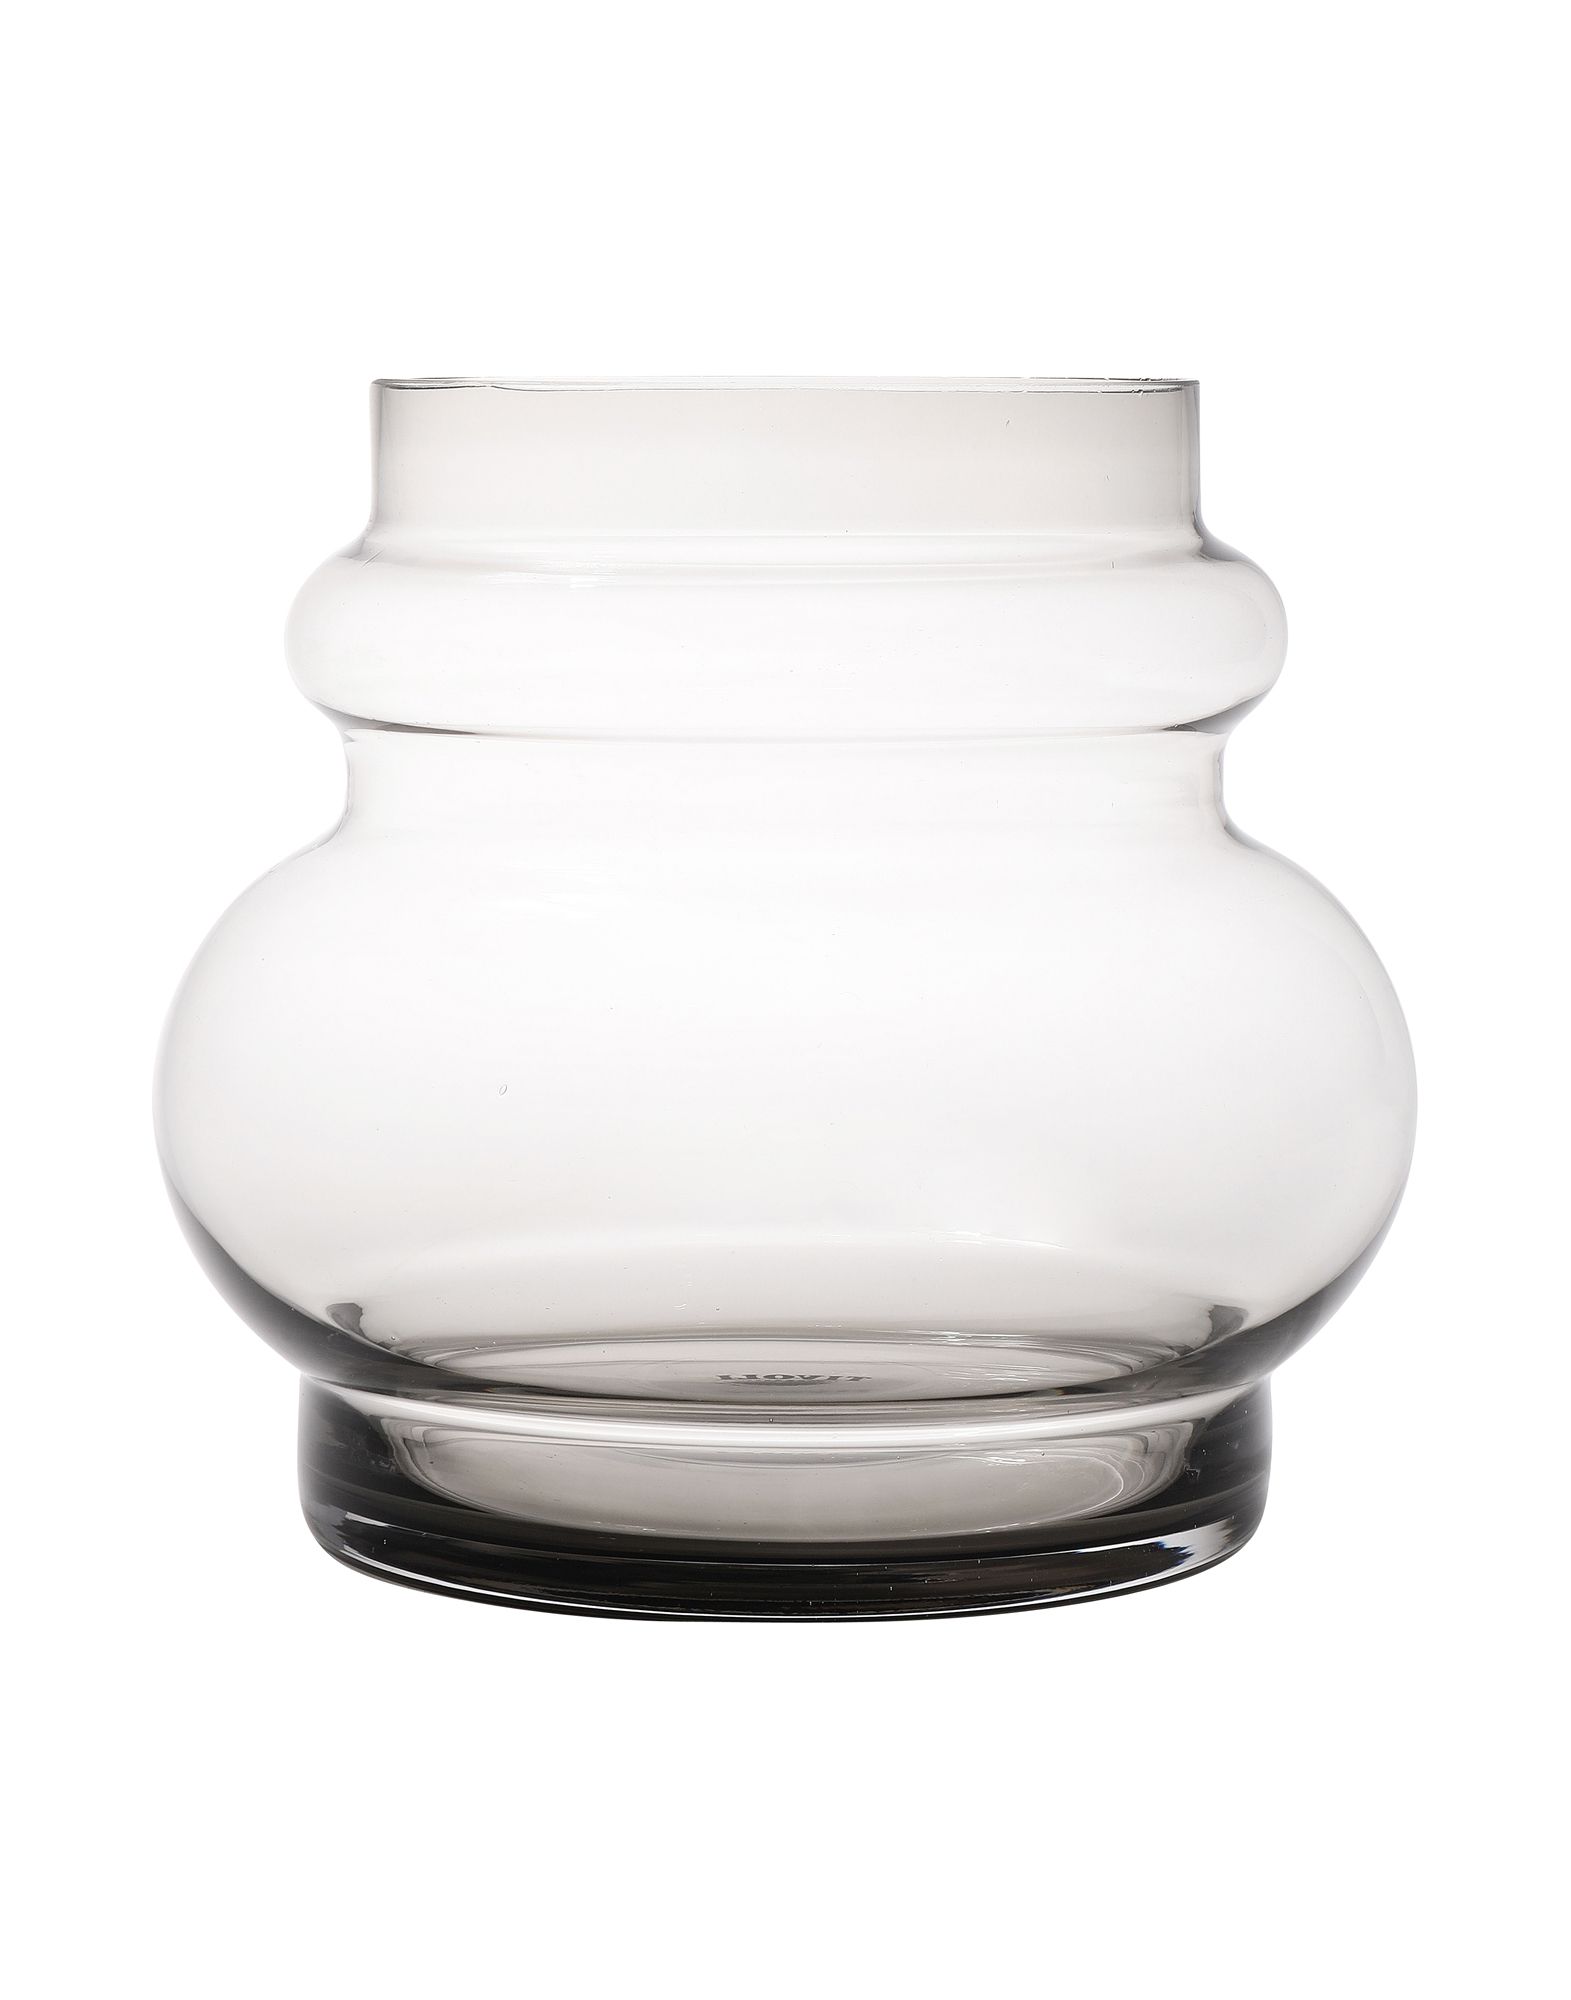 《期間限定セール開催中!》NORMANN COPENHAGEN Unisex ベース グレー ガラス TIVOLI Balloon Vase Medium